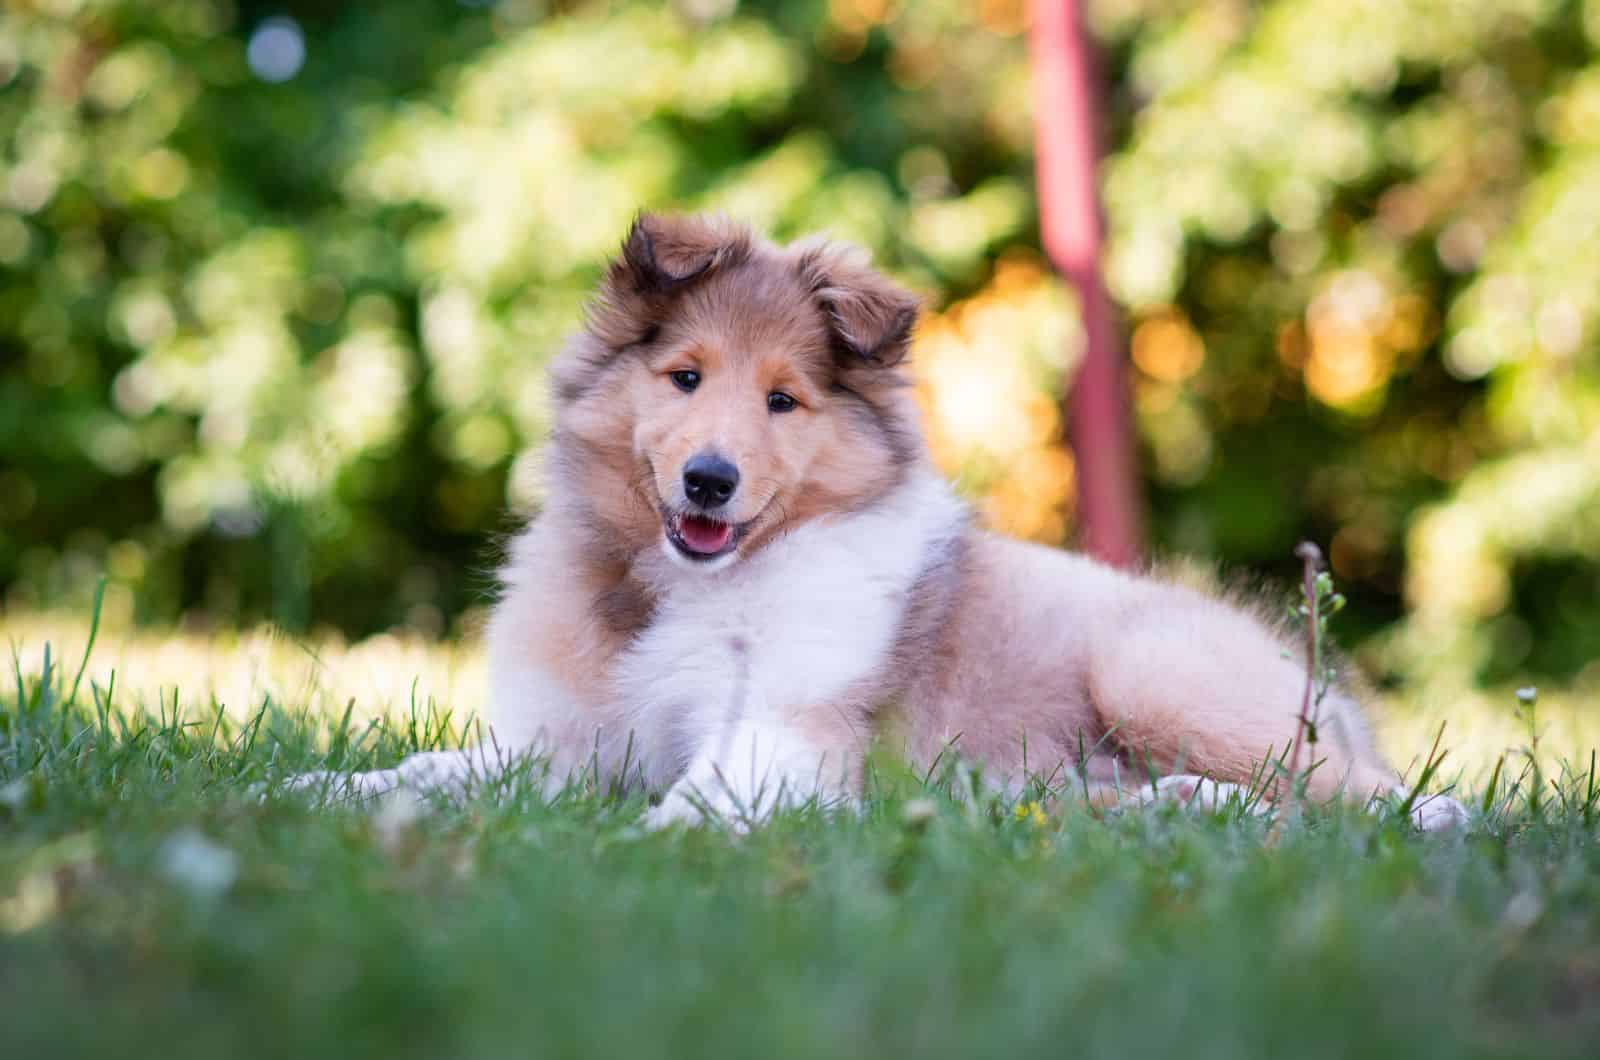 Rough Collie puppy sitting on grass